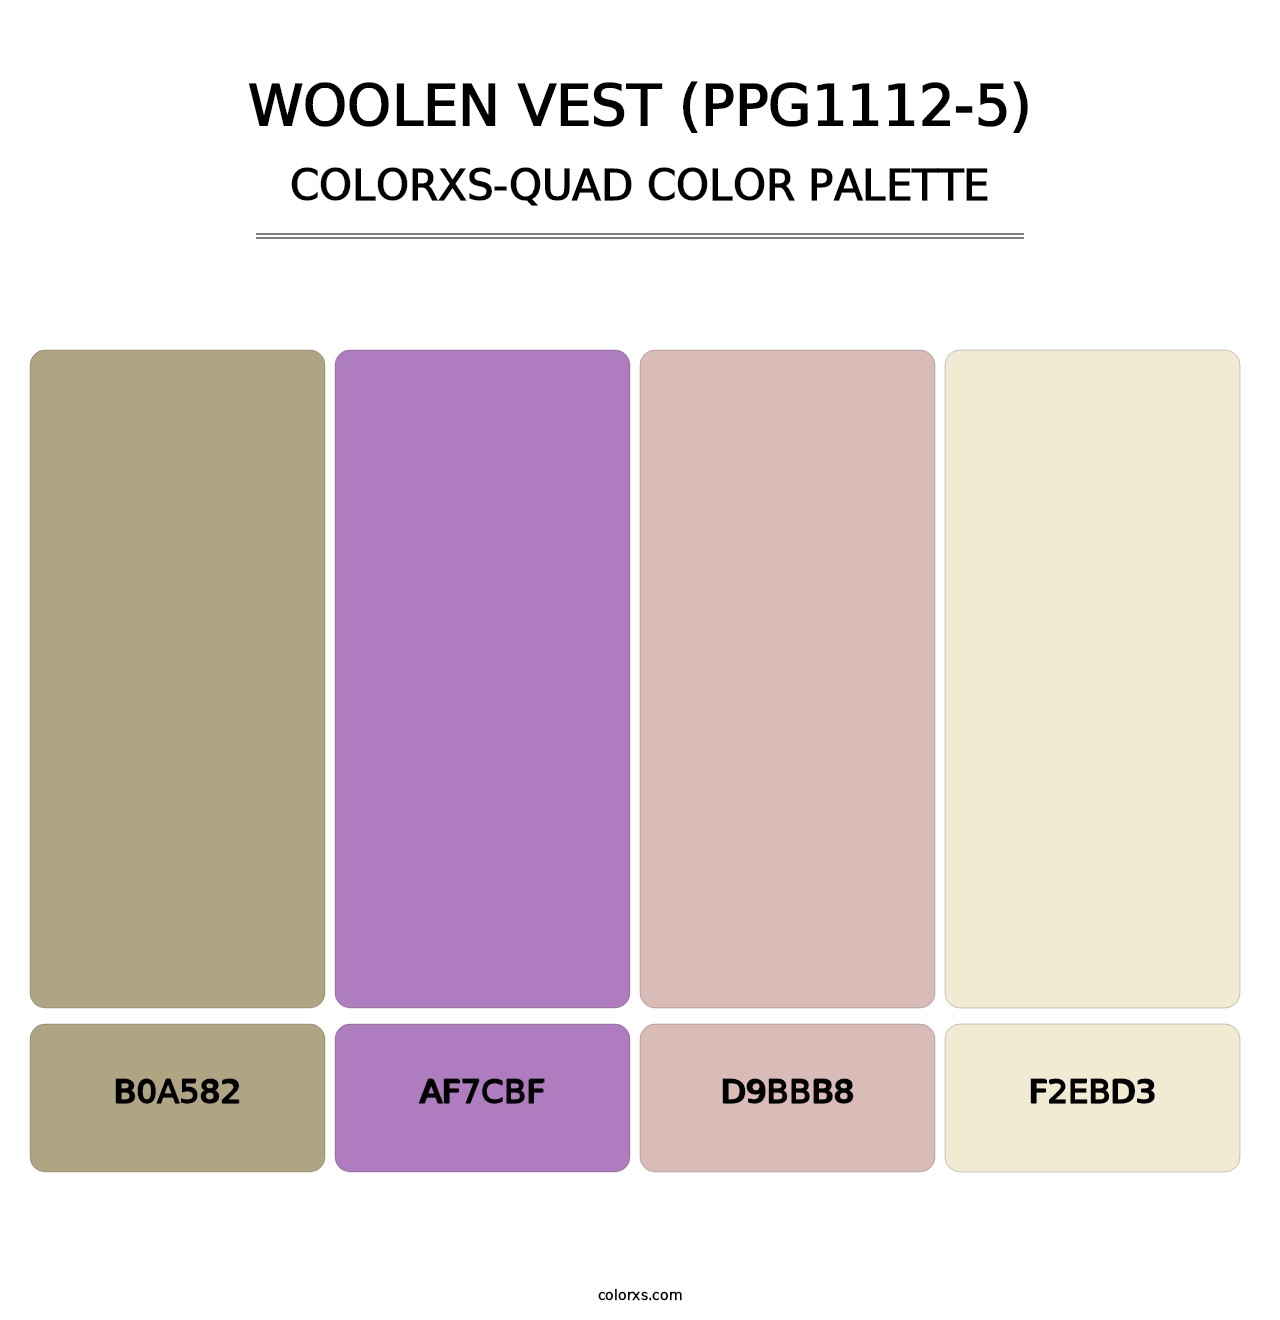 Woolen Vest (PPG1112-5) - Colorxs Quad Palette